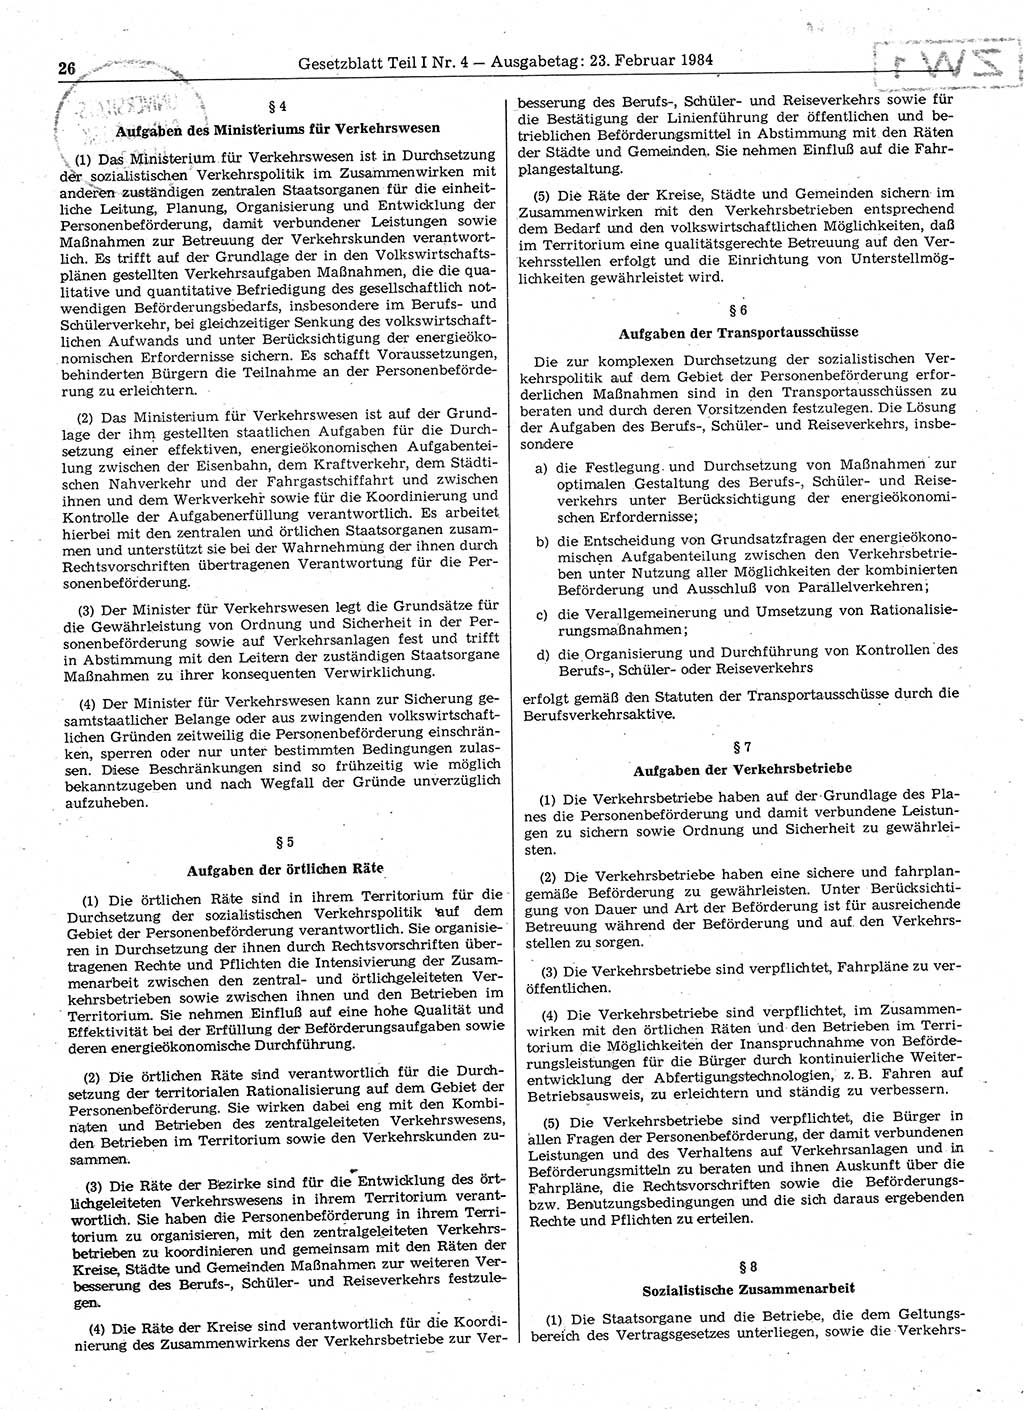 Gesetzblatt (GBl.) der Deutschen Demokratischen Republik (DDR) Teil Ⅰ 1984, Seite 26 (GBl. DDR Ⅰ 1984, S. 26)